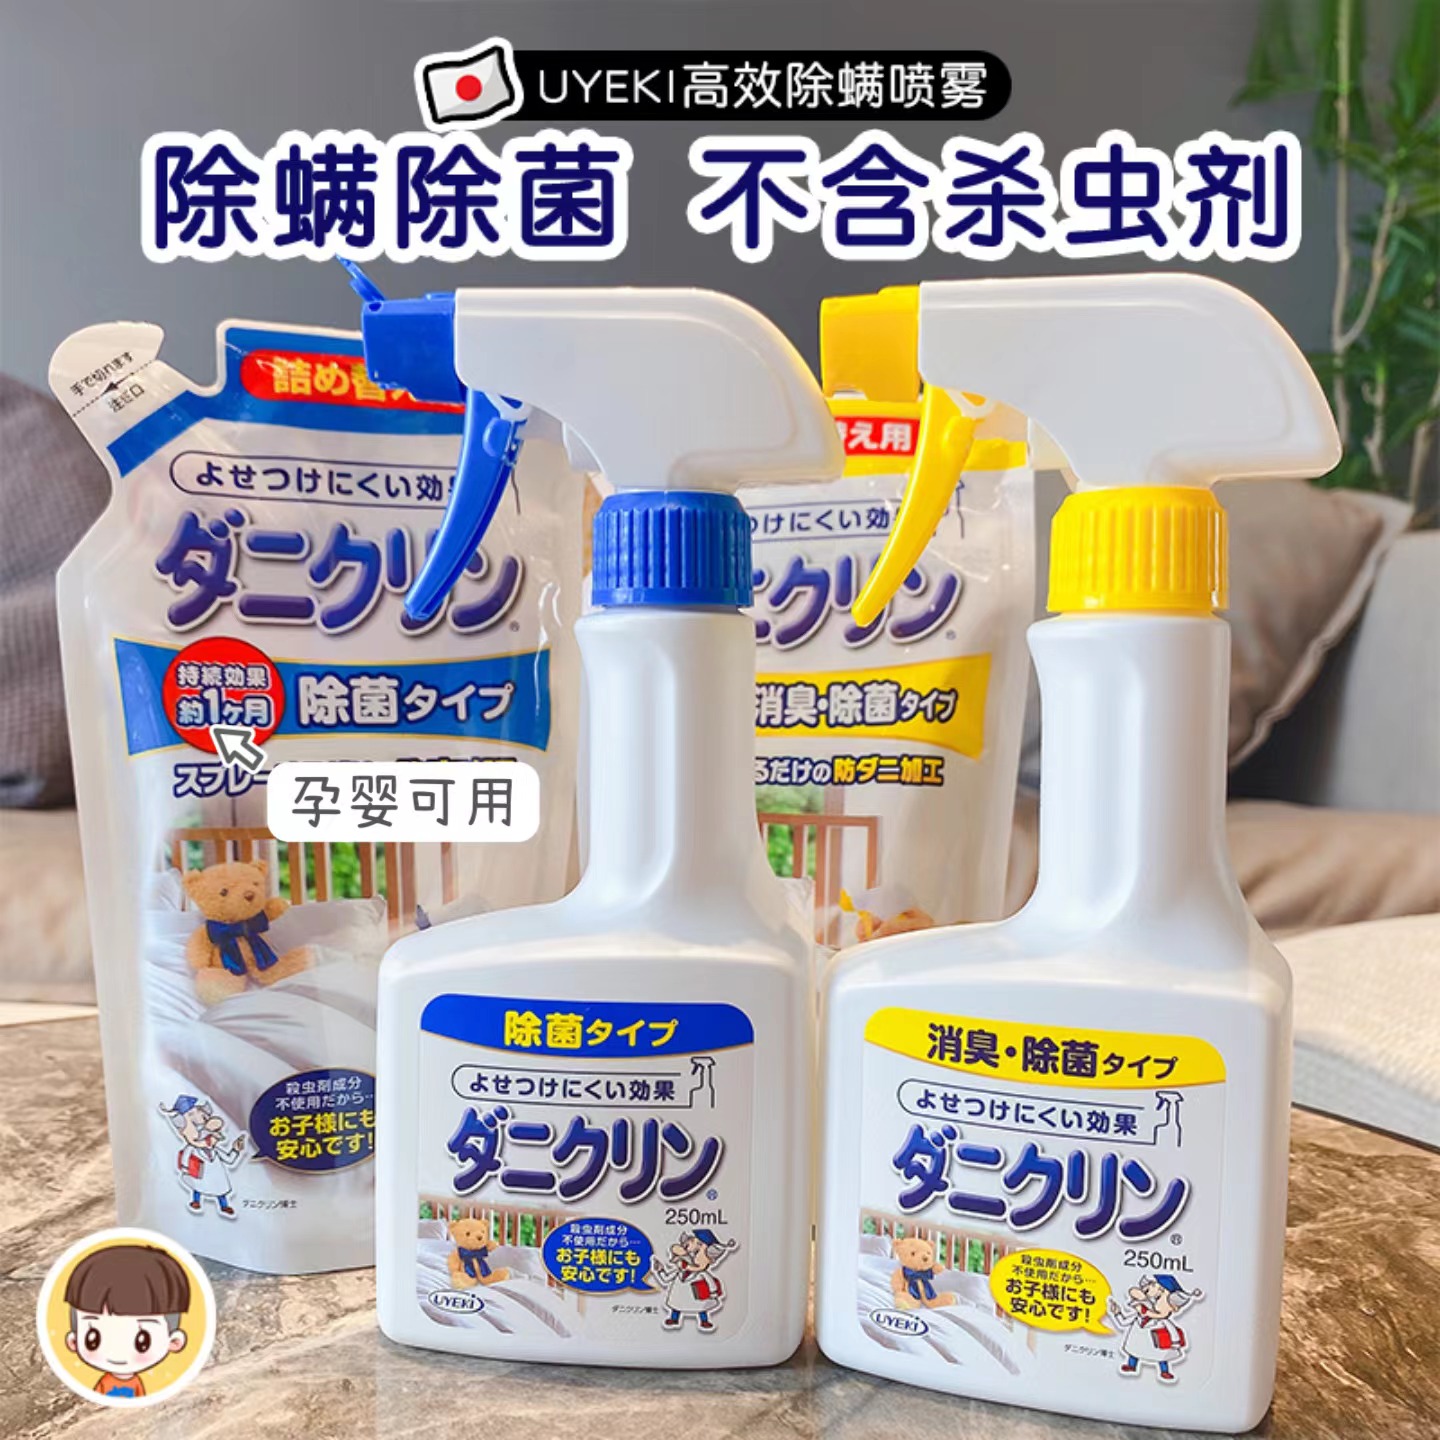 日本UYEKI除螨虫喷雾剂除螨剂去螨除螨虫喷剂床上除菌防螨250ml